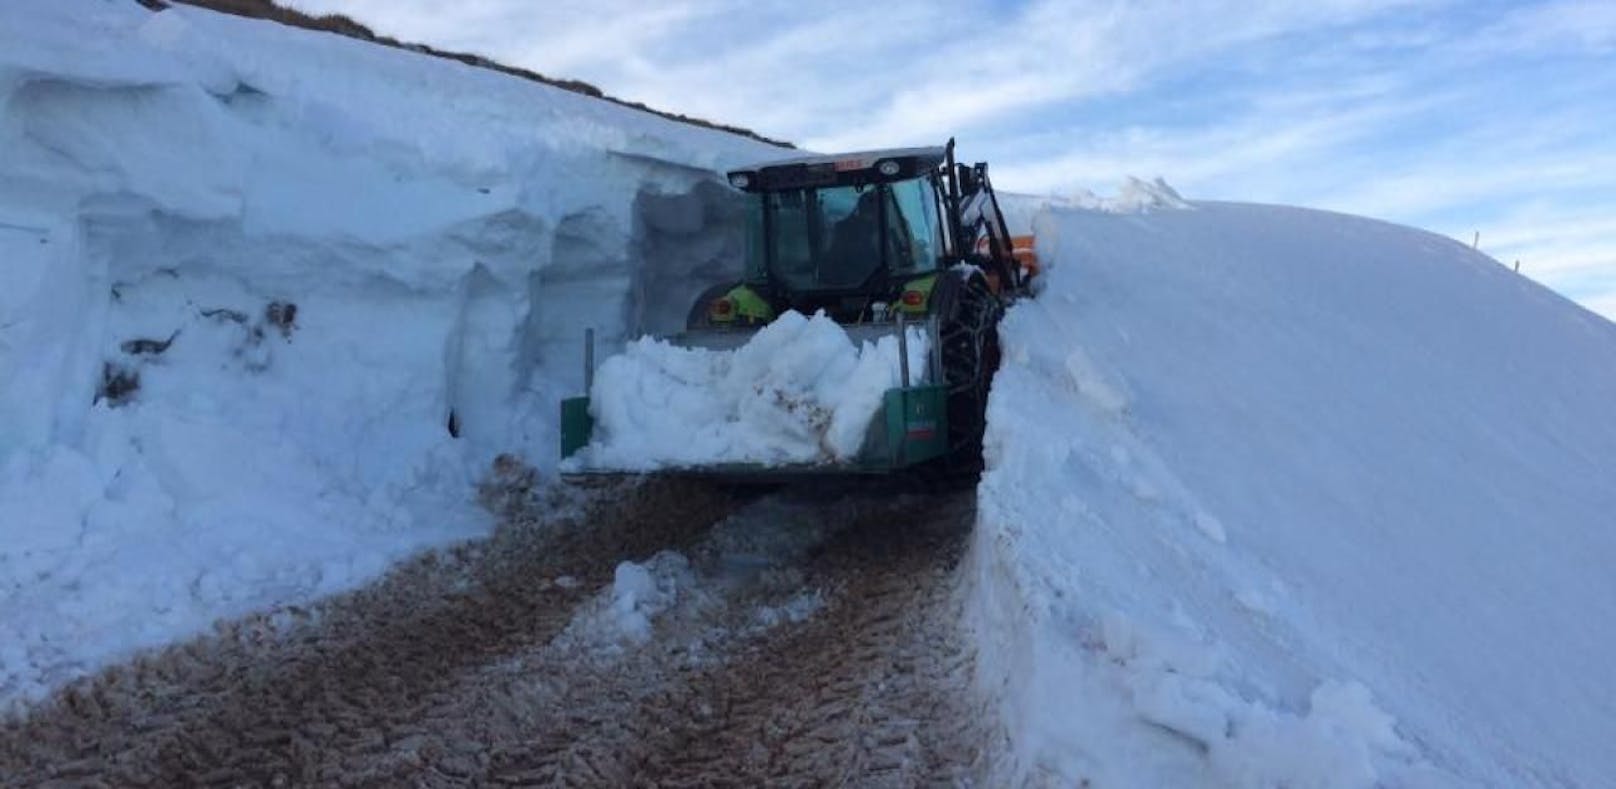 Traktor kämpft sich durch meterhohe Schneemassen